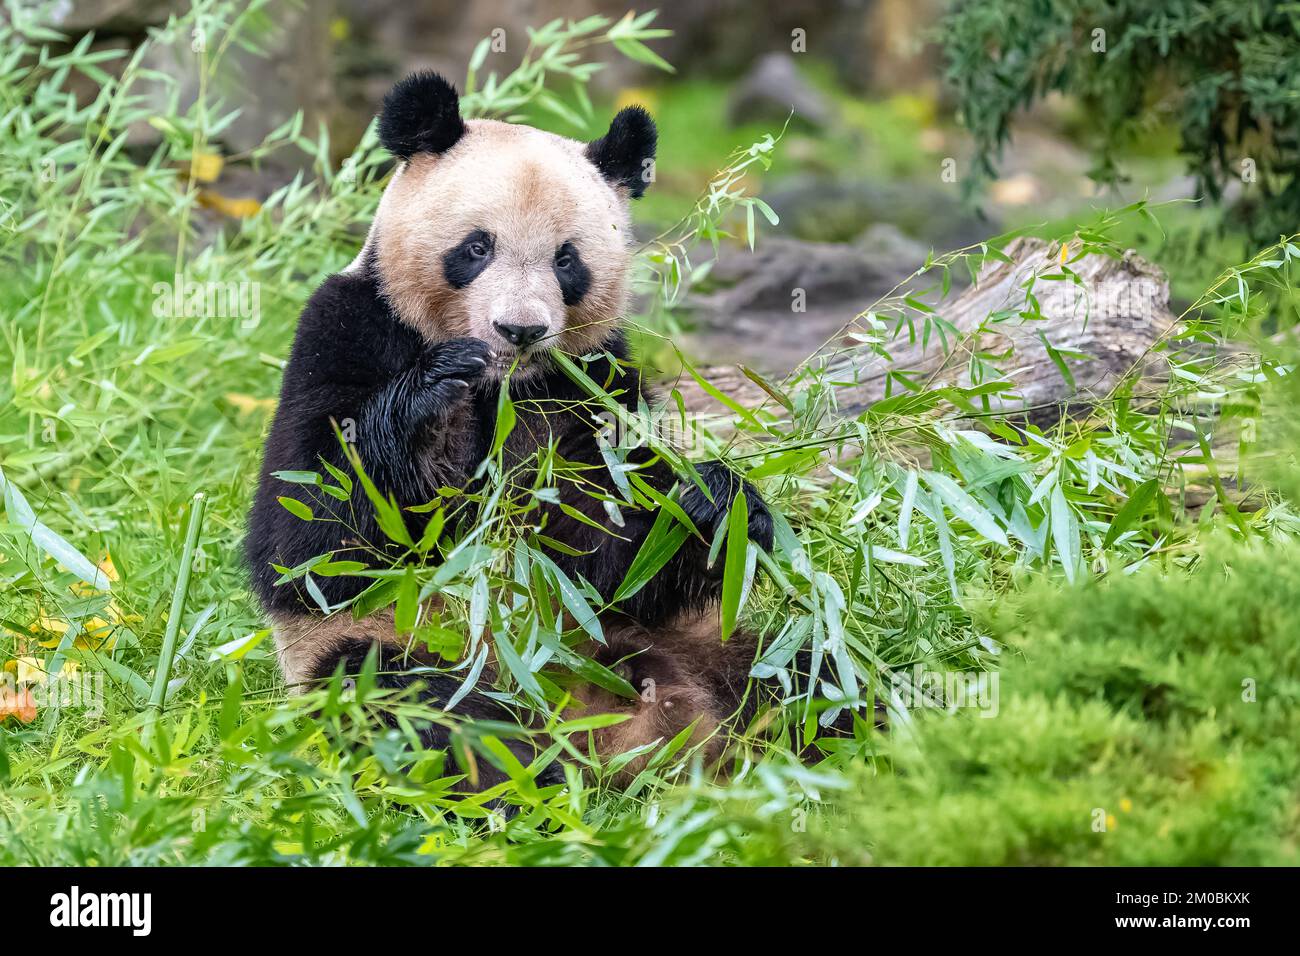 Jeune panda géant mangeant du bambou dans l'herbe, portrait Banque D'Images